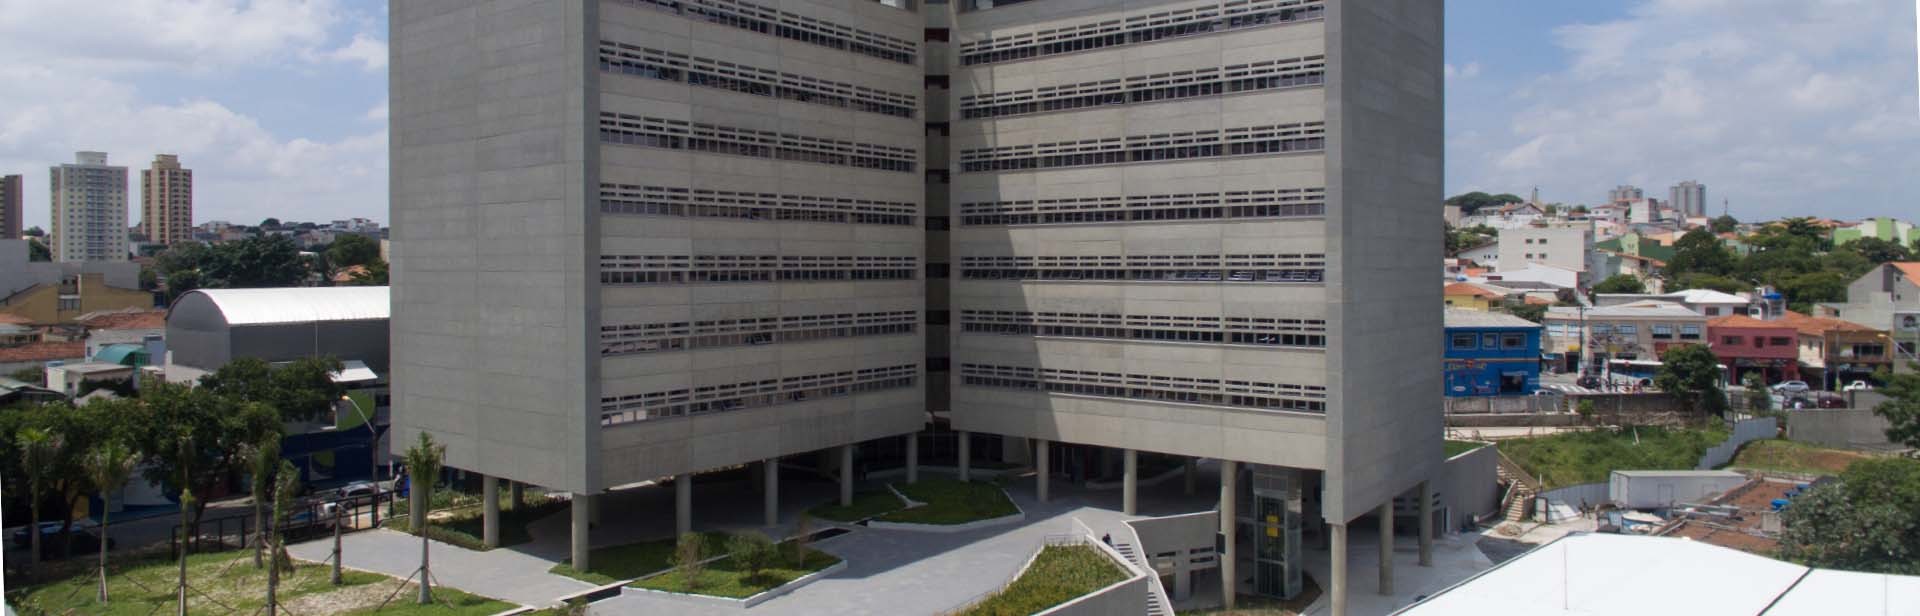 Universidade Federal do ABC - Unidade Tamanduateí